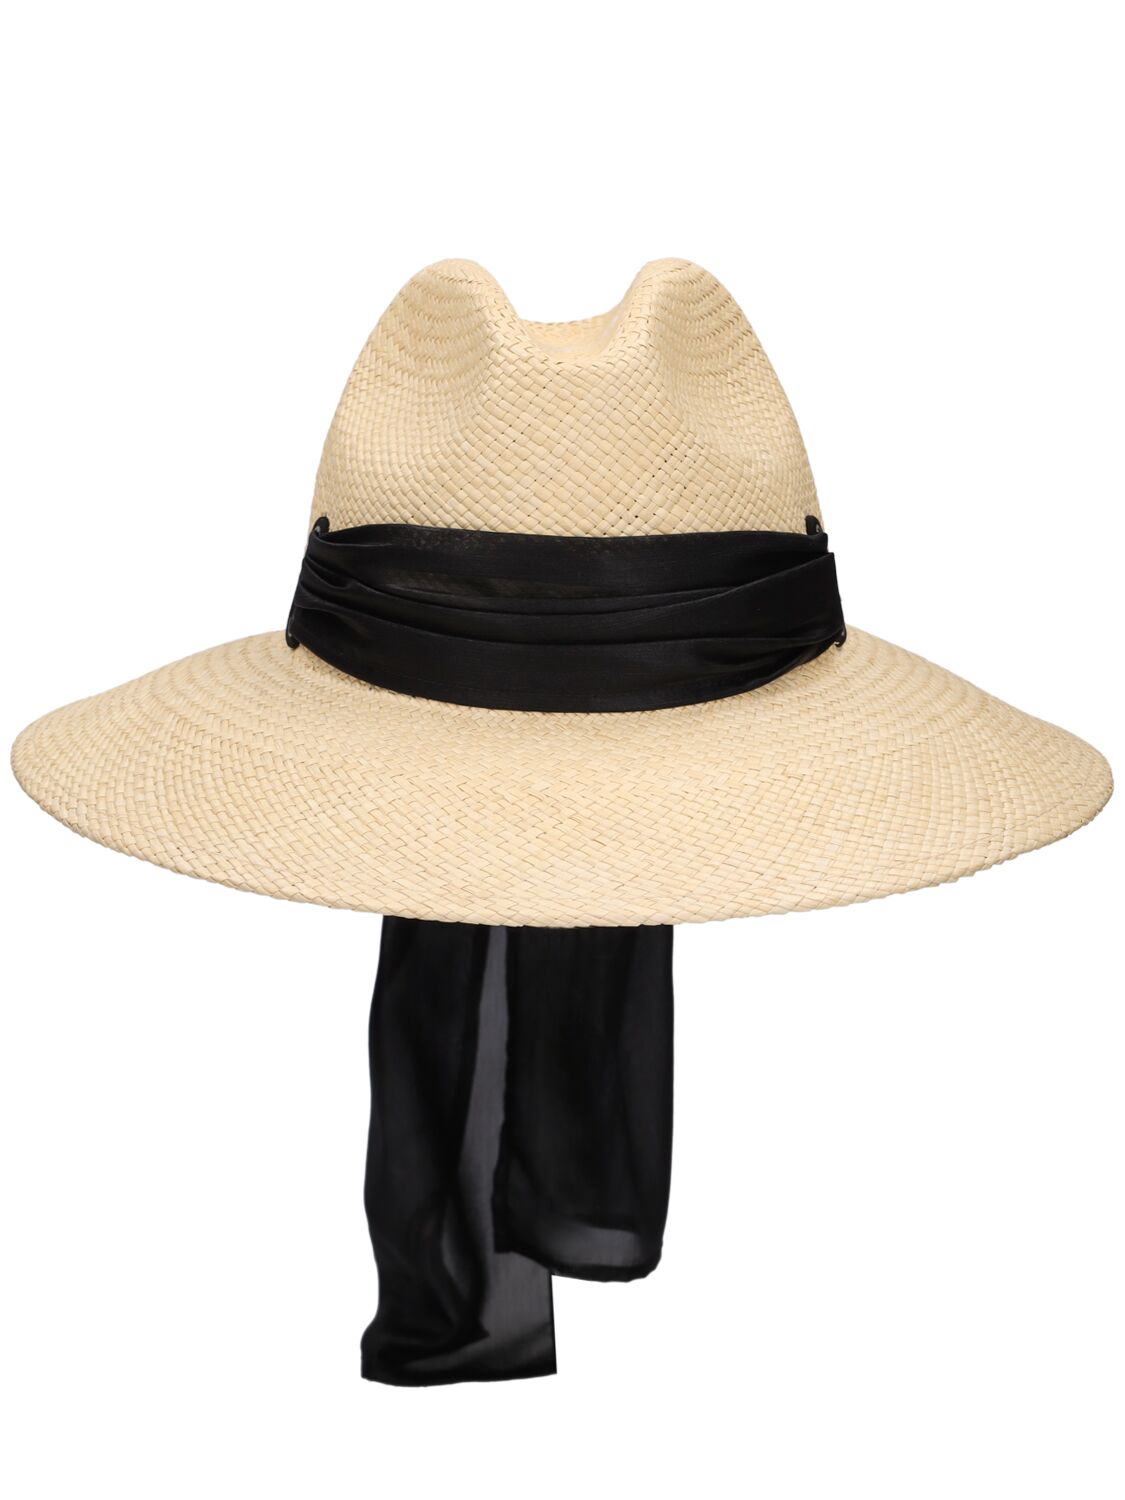 Borsalino Samantha Straw Panama Hat In Naturale,nero